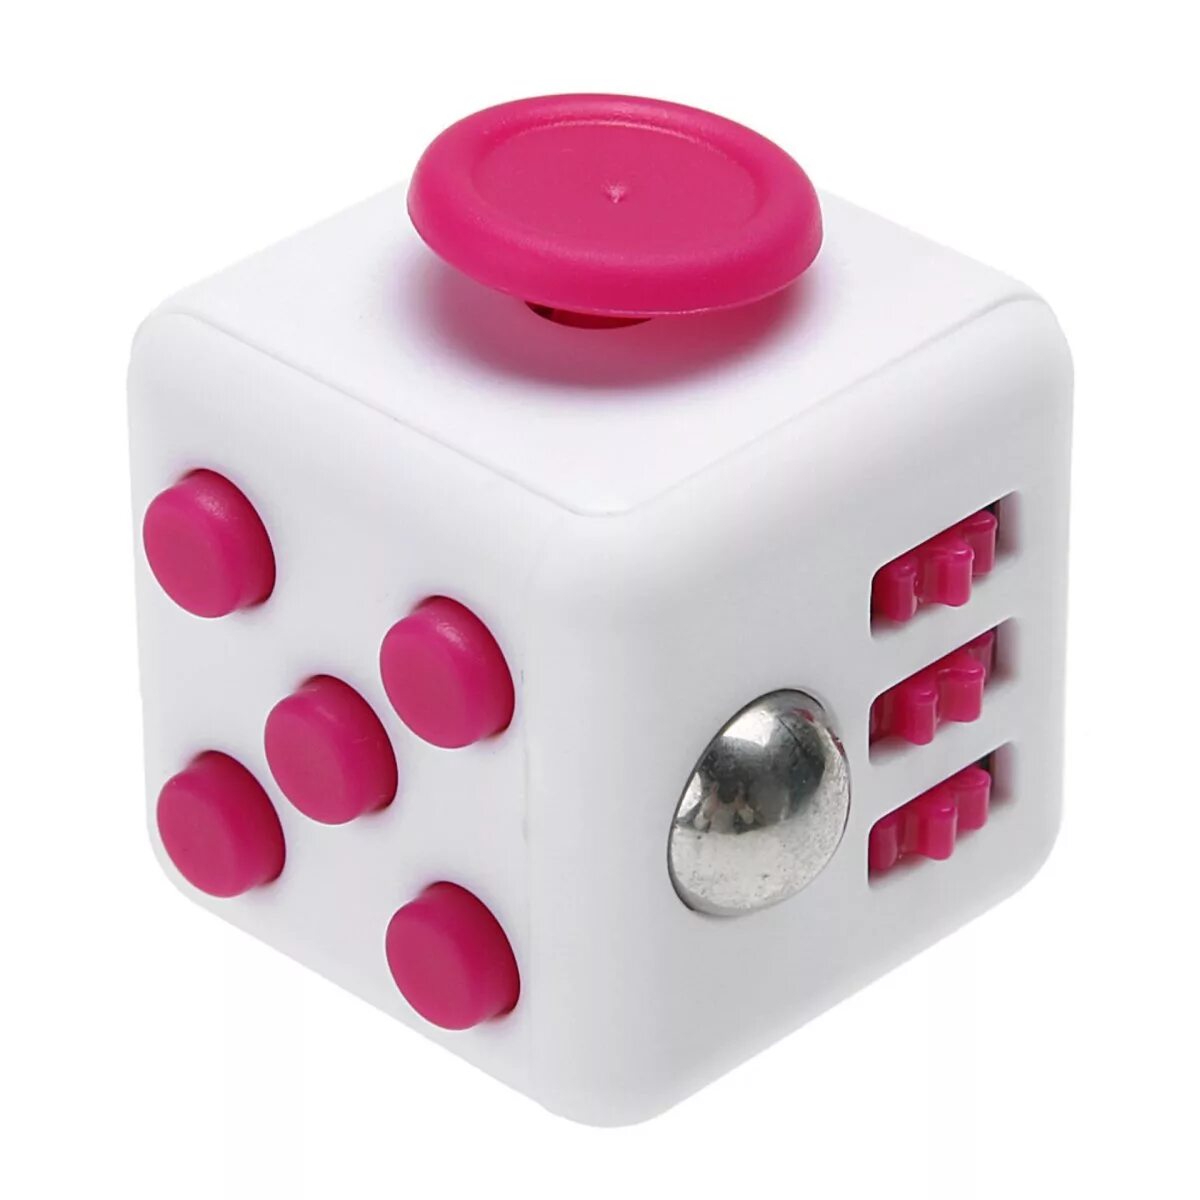 Куб антистресс. Фиджет куб, антистресс игрушка. Кубик Fidget Cube. Антистрессовый кубик Fidget Cube. Fidget Cube 1 Toy т10664.